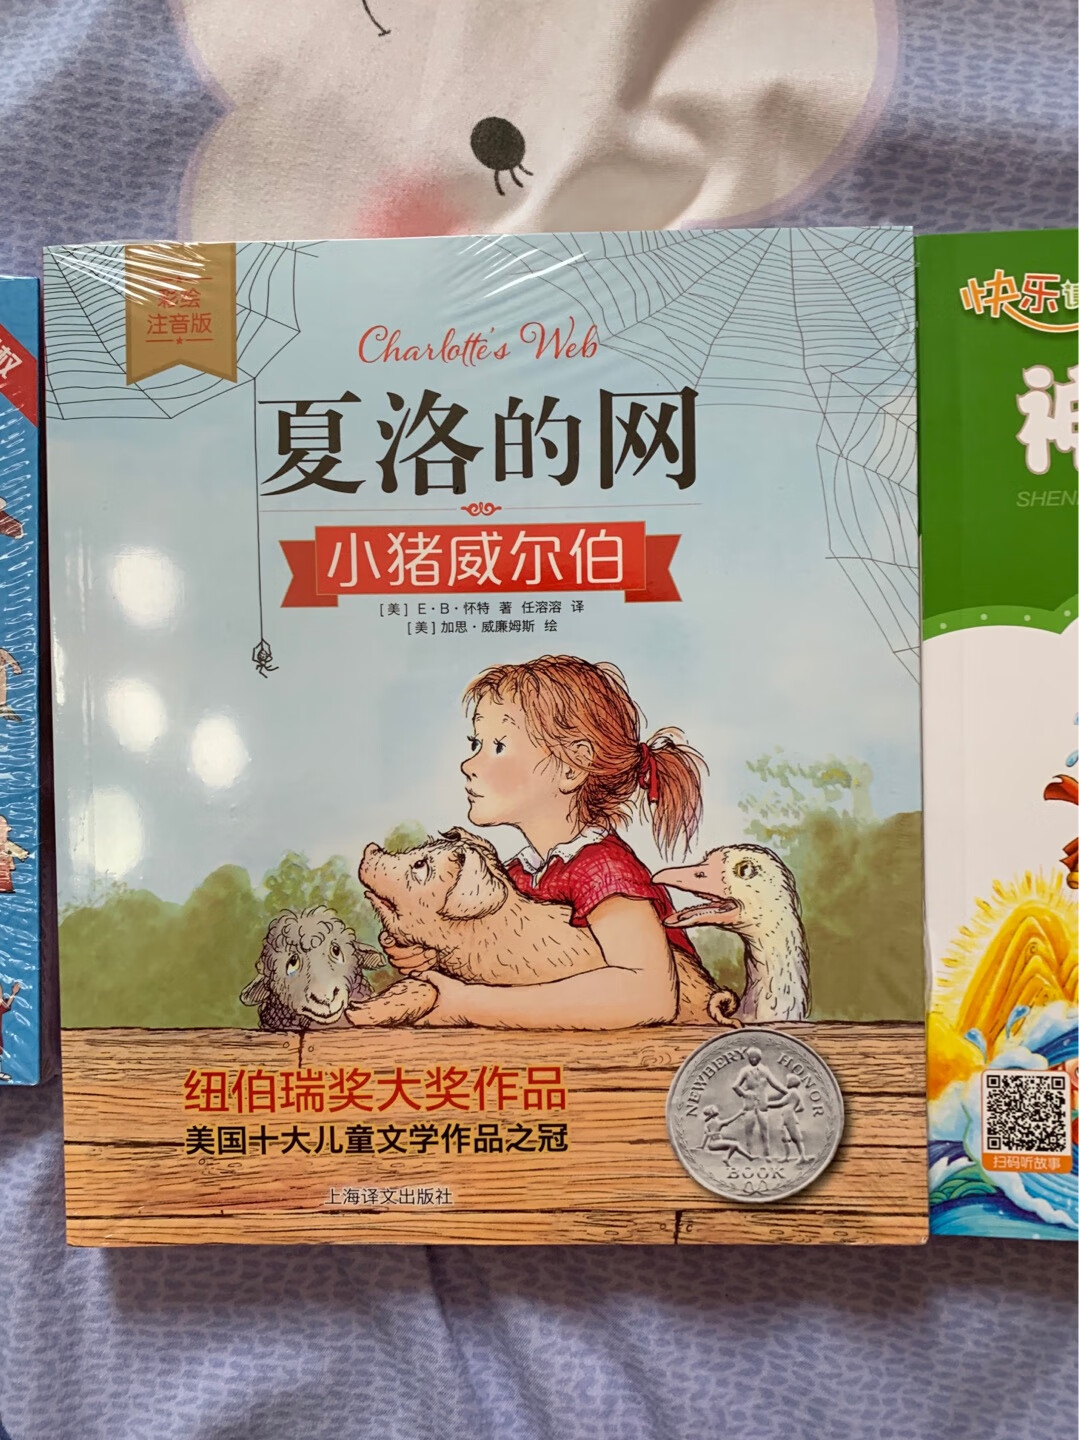 老师推荐的三年级小朋友看的书。